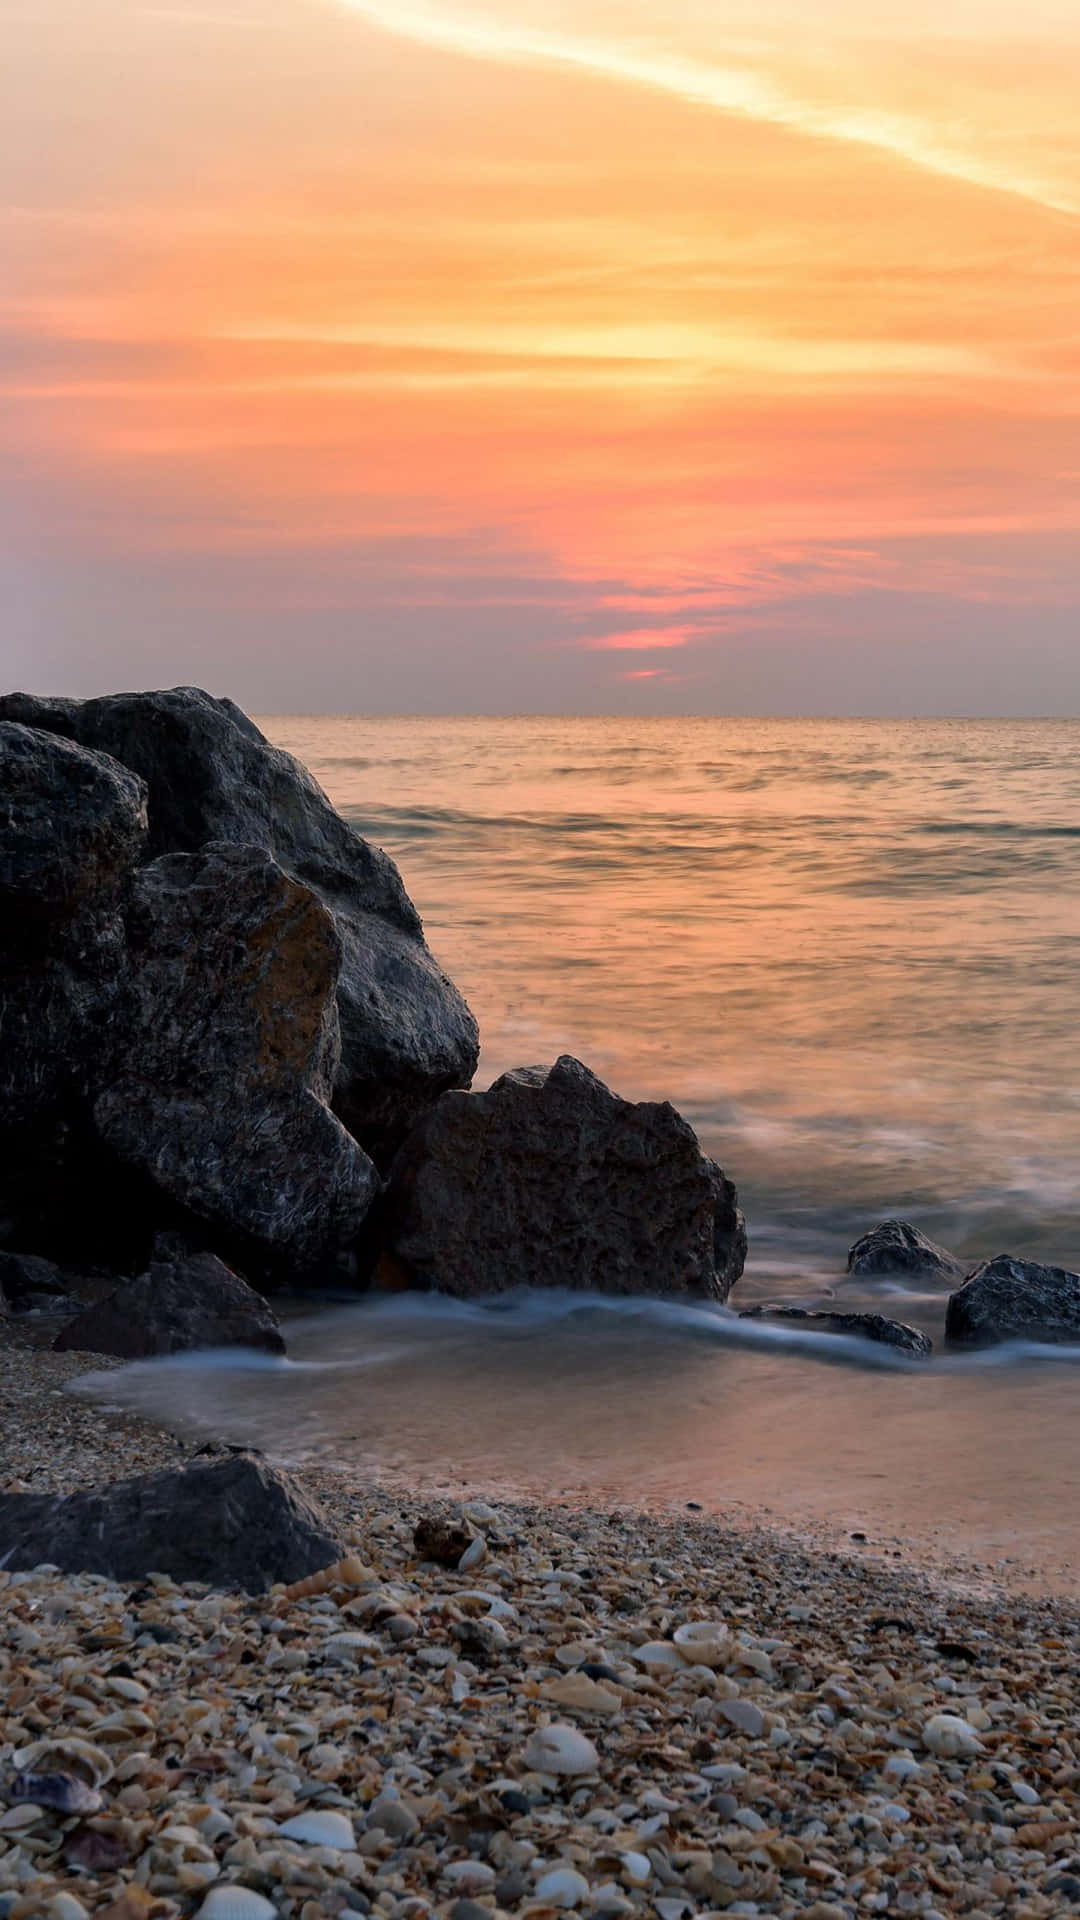 Baggrundsmaleri af solnedgang på kysten af Iphone X Malibu